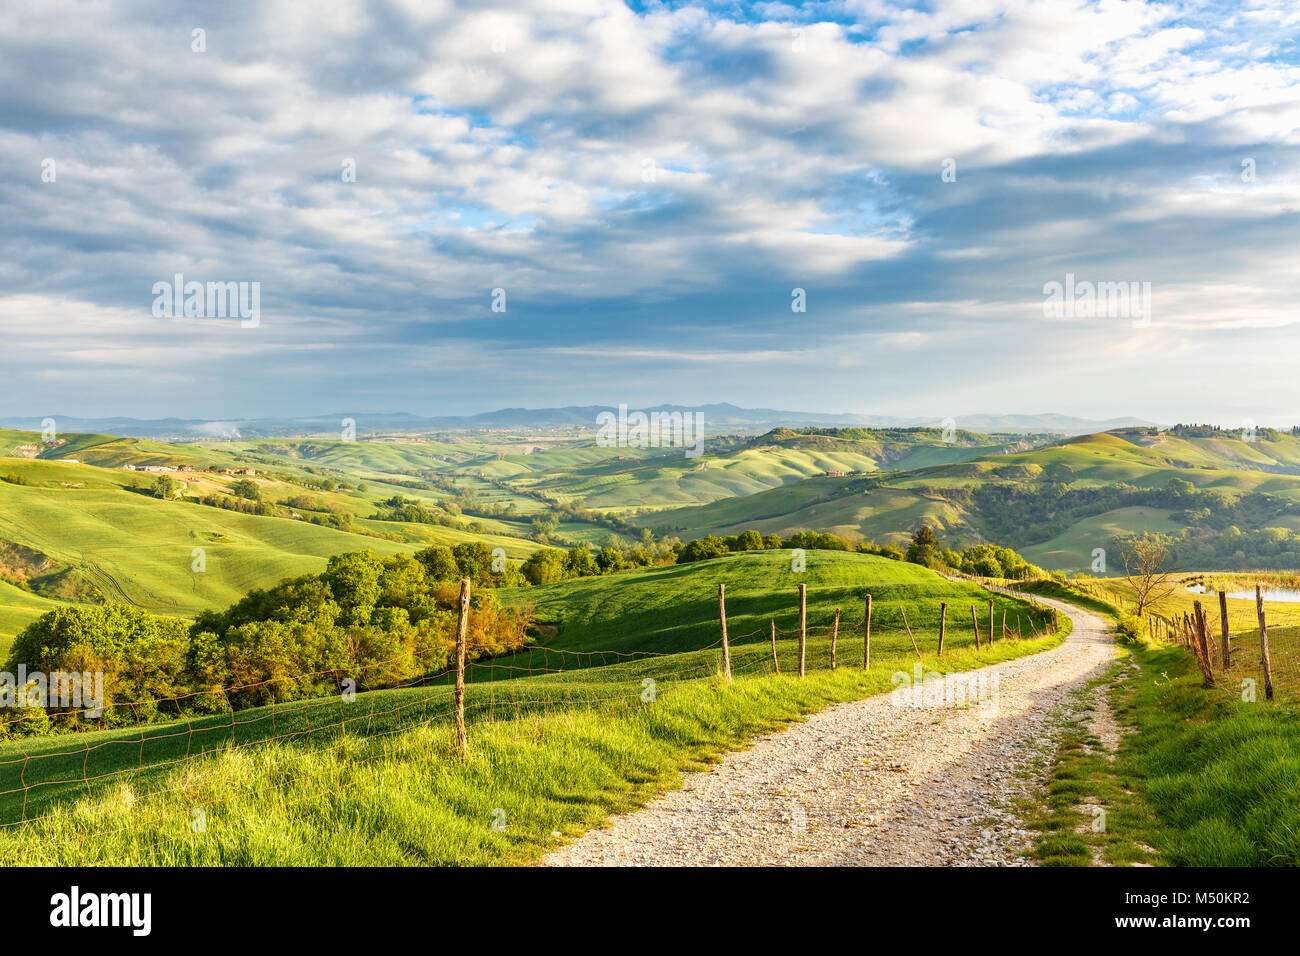 Route de terre dans la vallée dans un paysage italien rural Banque D'Images